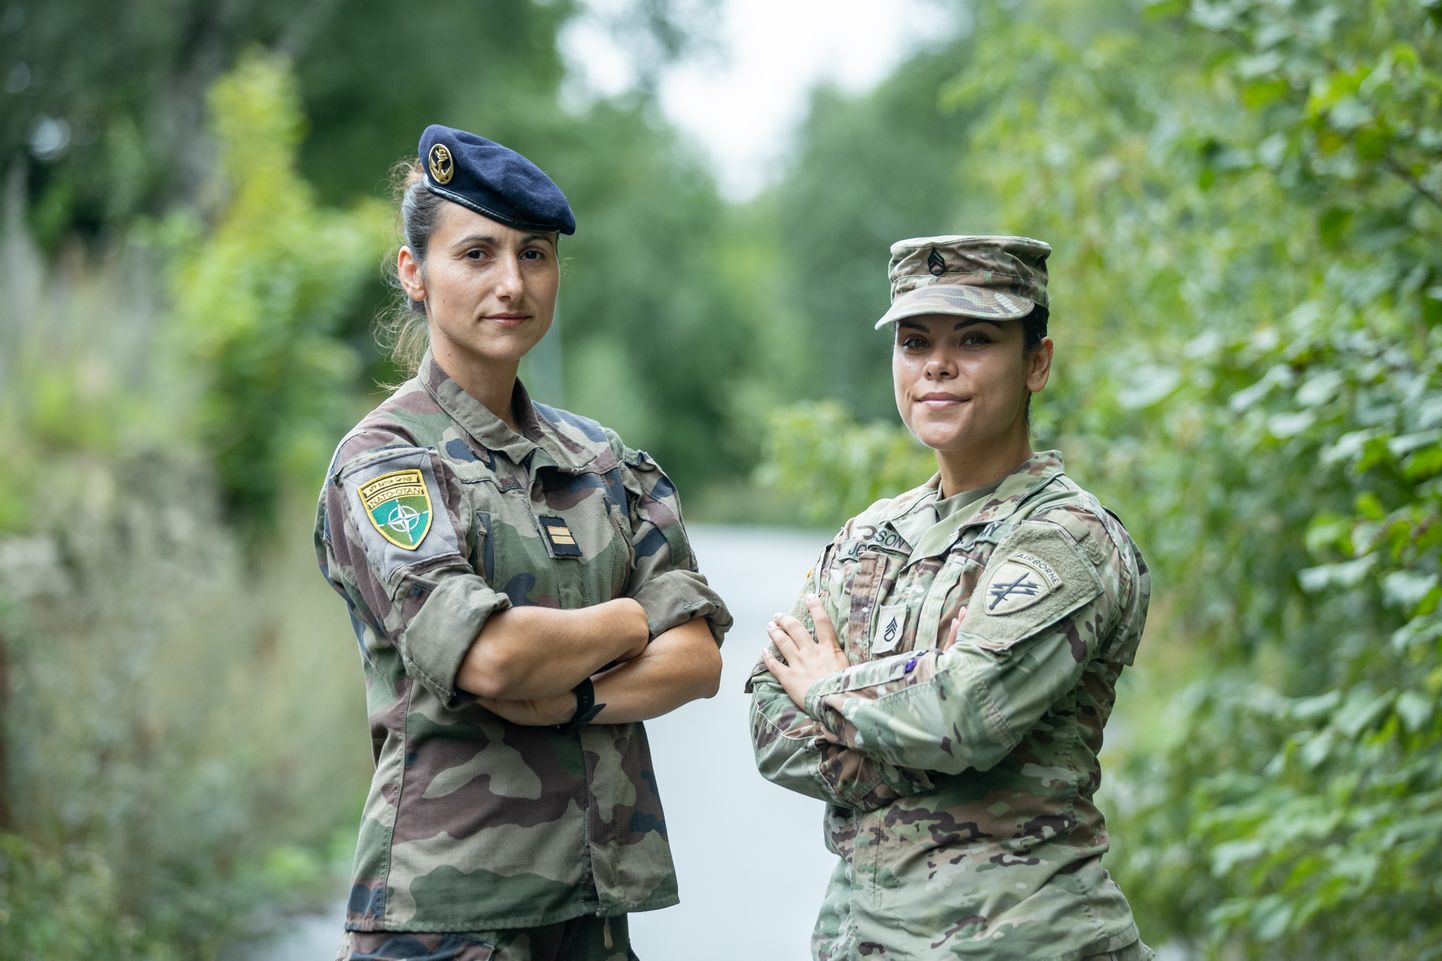 Лейтенант французской армии Анаис (слева) и младший фельдфебель армии США Глория Ларисса Крусес Йоханссон (справа). ФОТО: Ээро Вабамяги